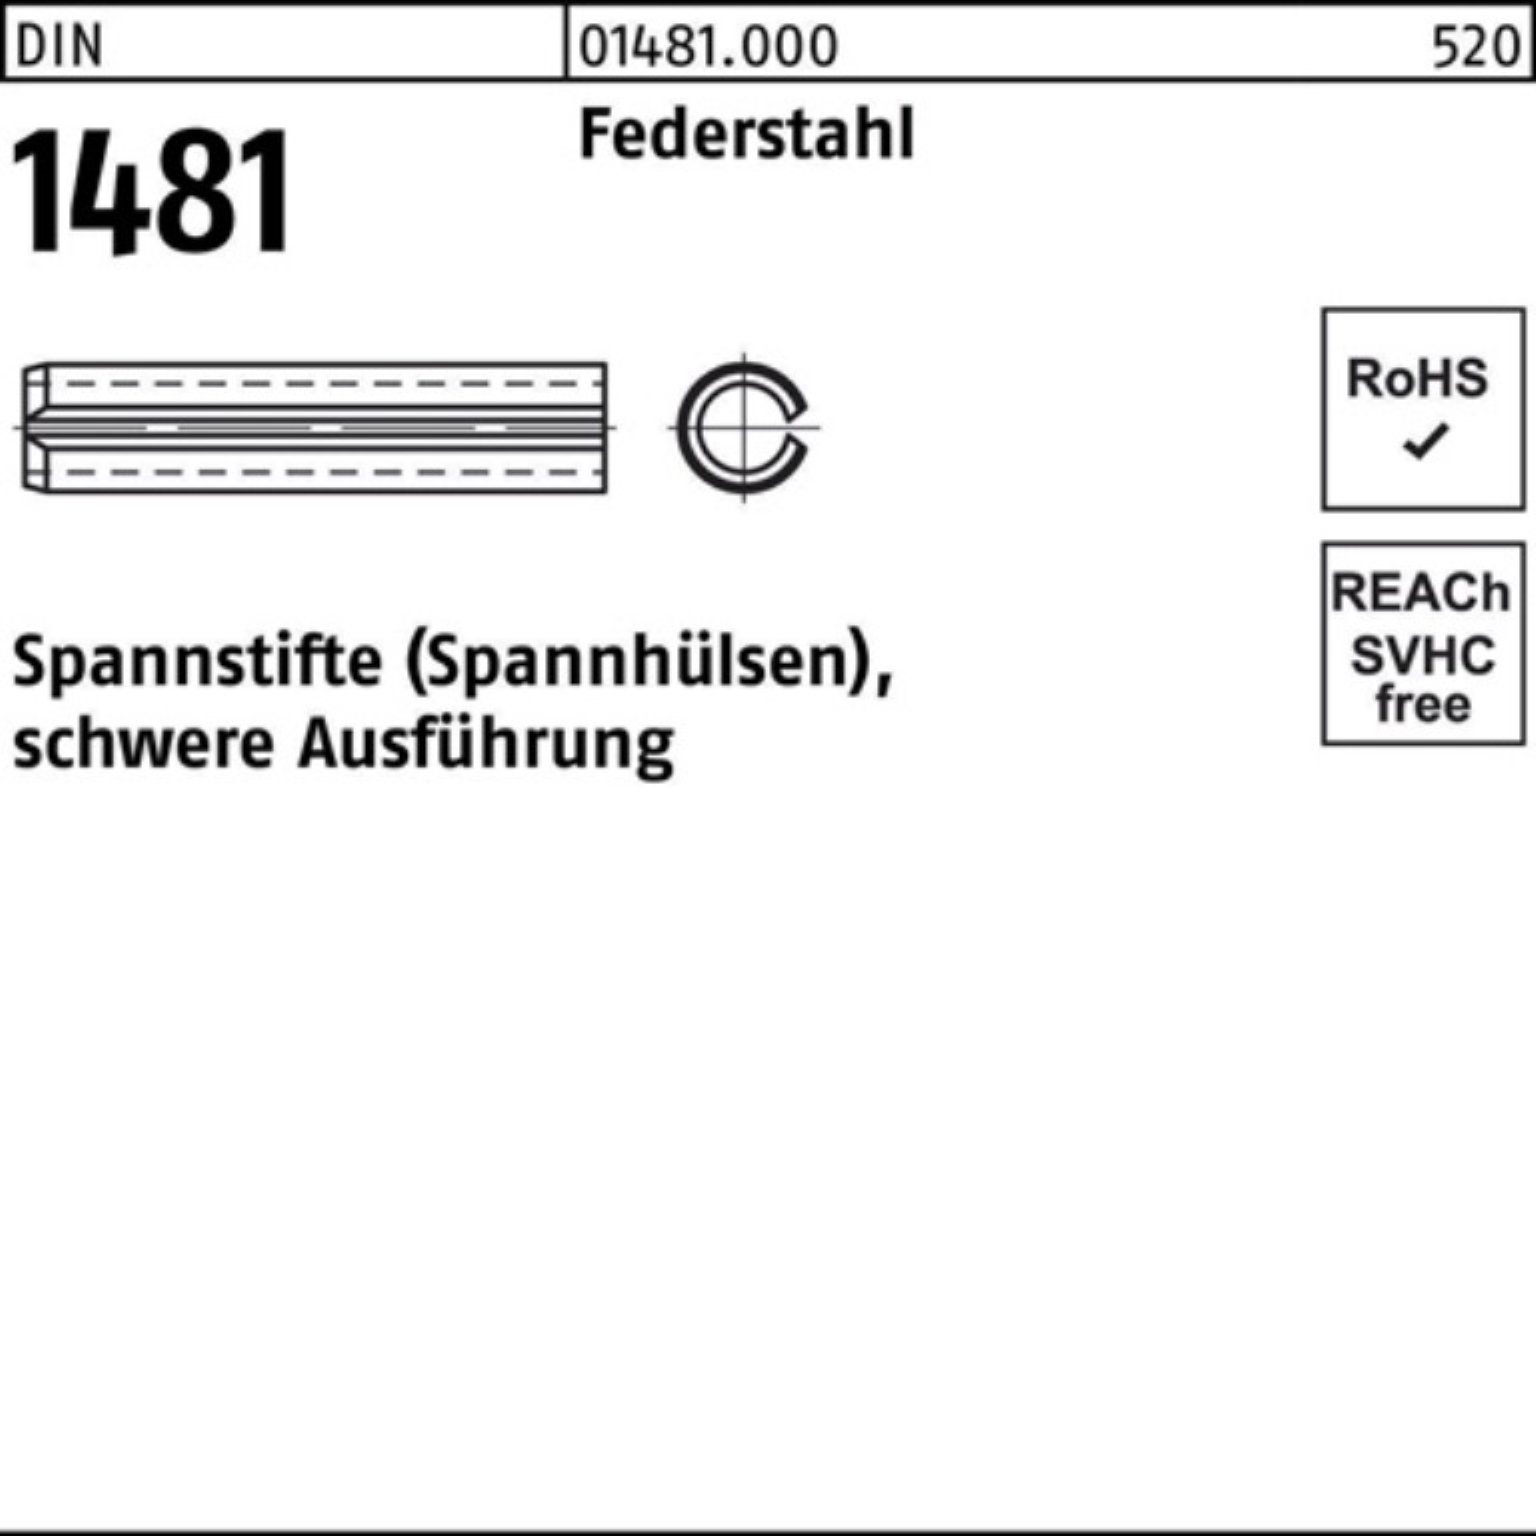 Reyher Spannstift 100er 80 1 Pack 1481 DIN Federstahl schwere Spannstift Ausführung 10x